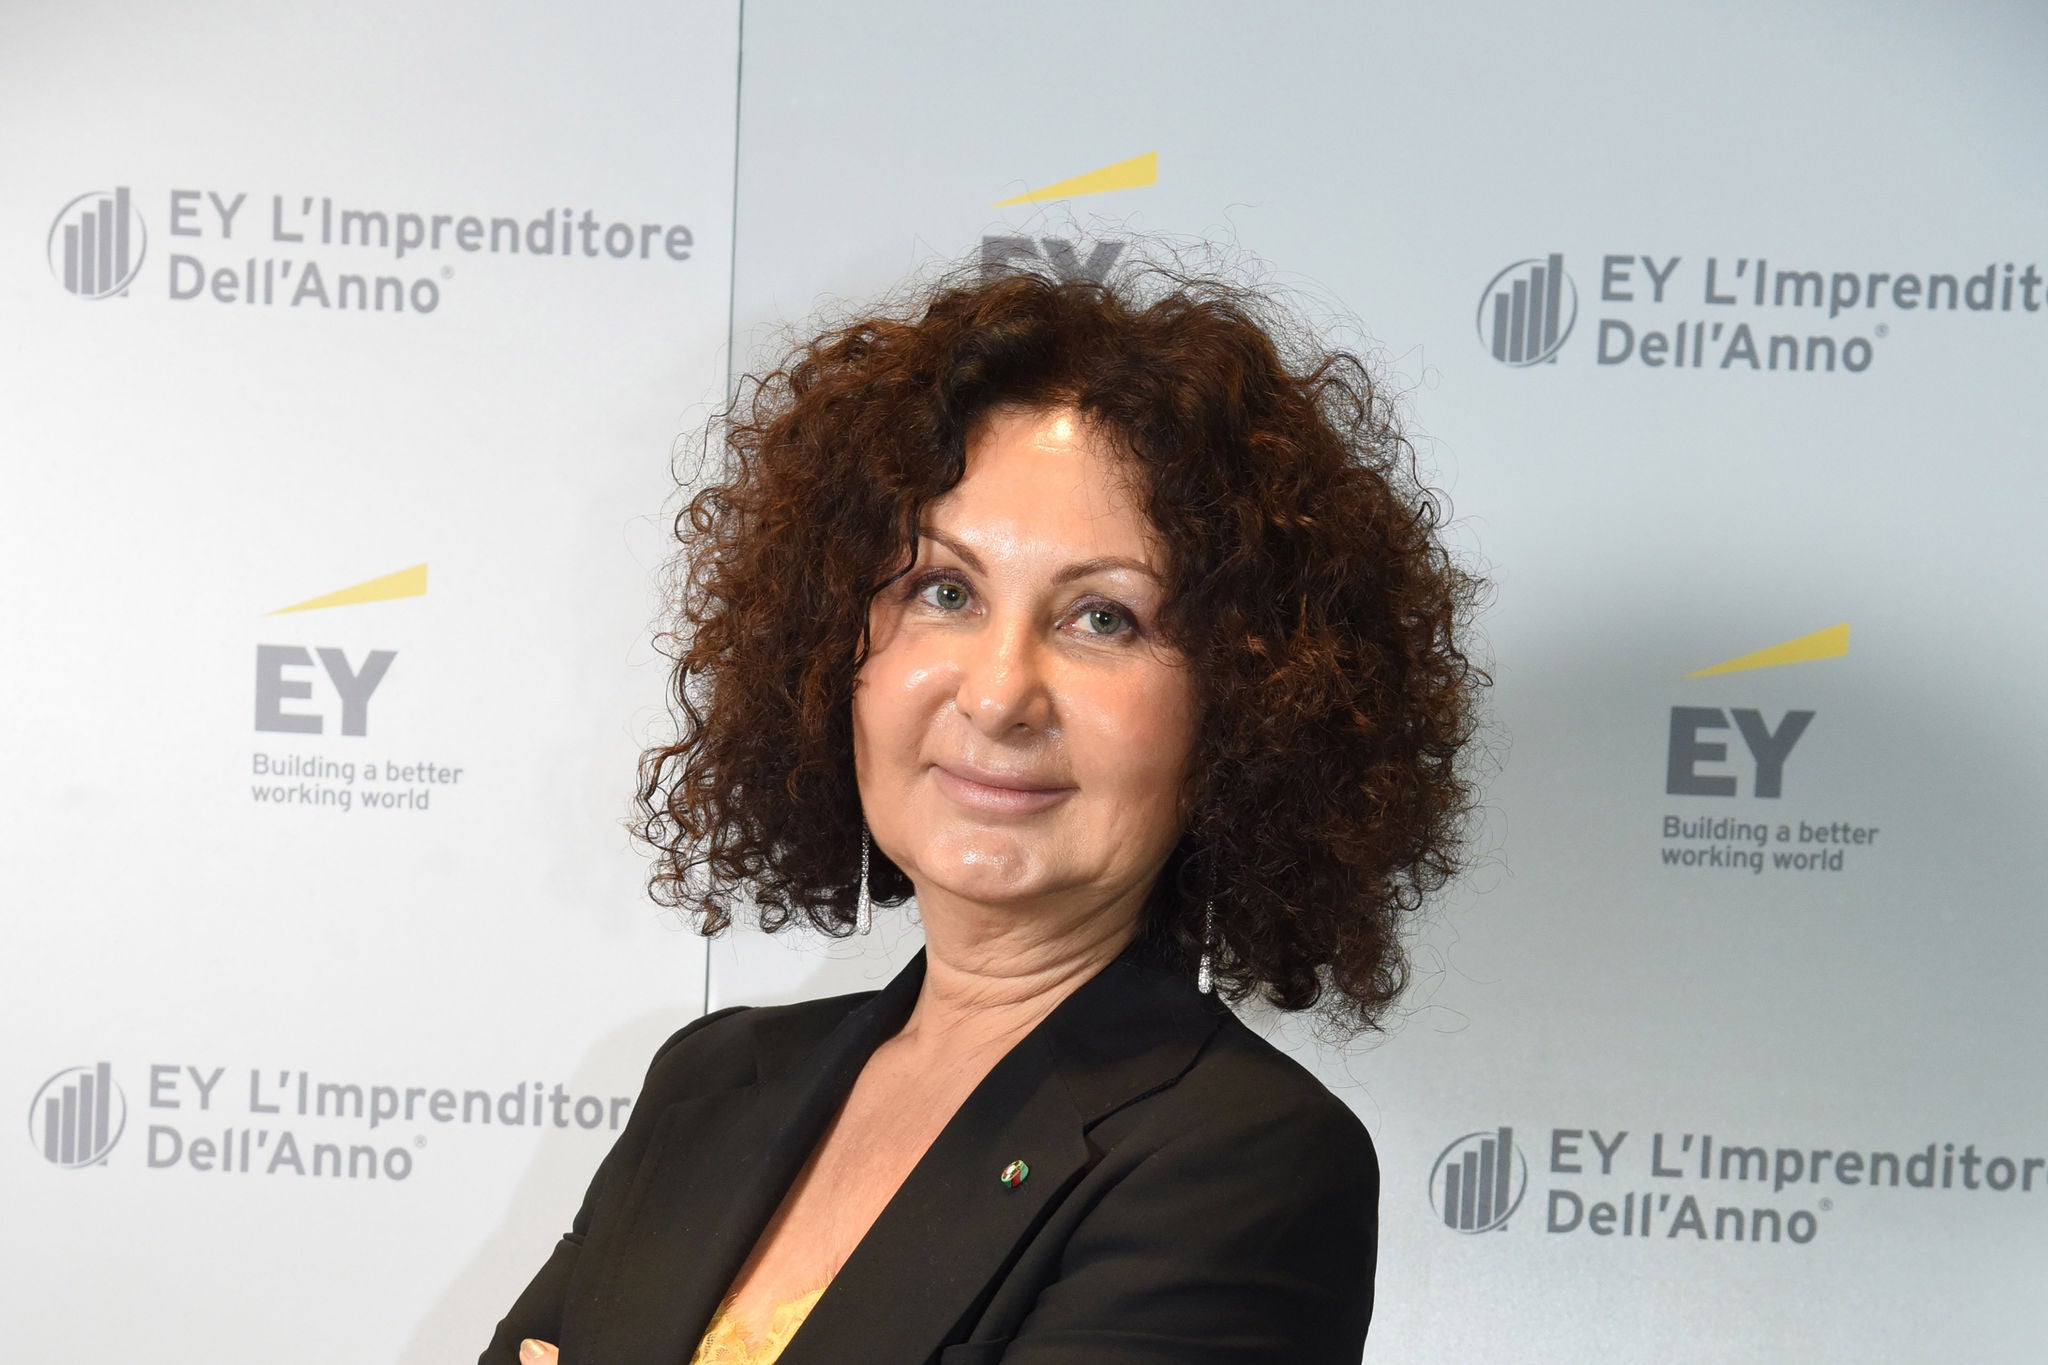 2019 Entrepreneur Sonia Bonfiglioli